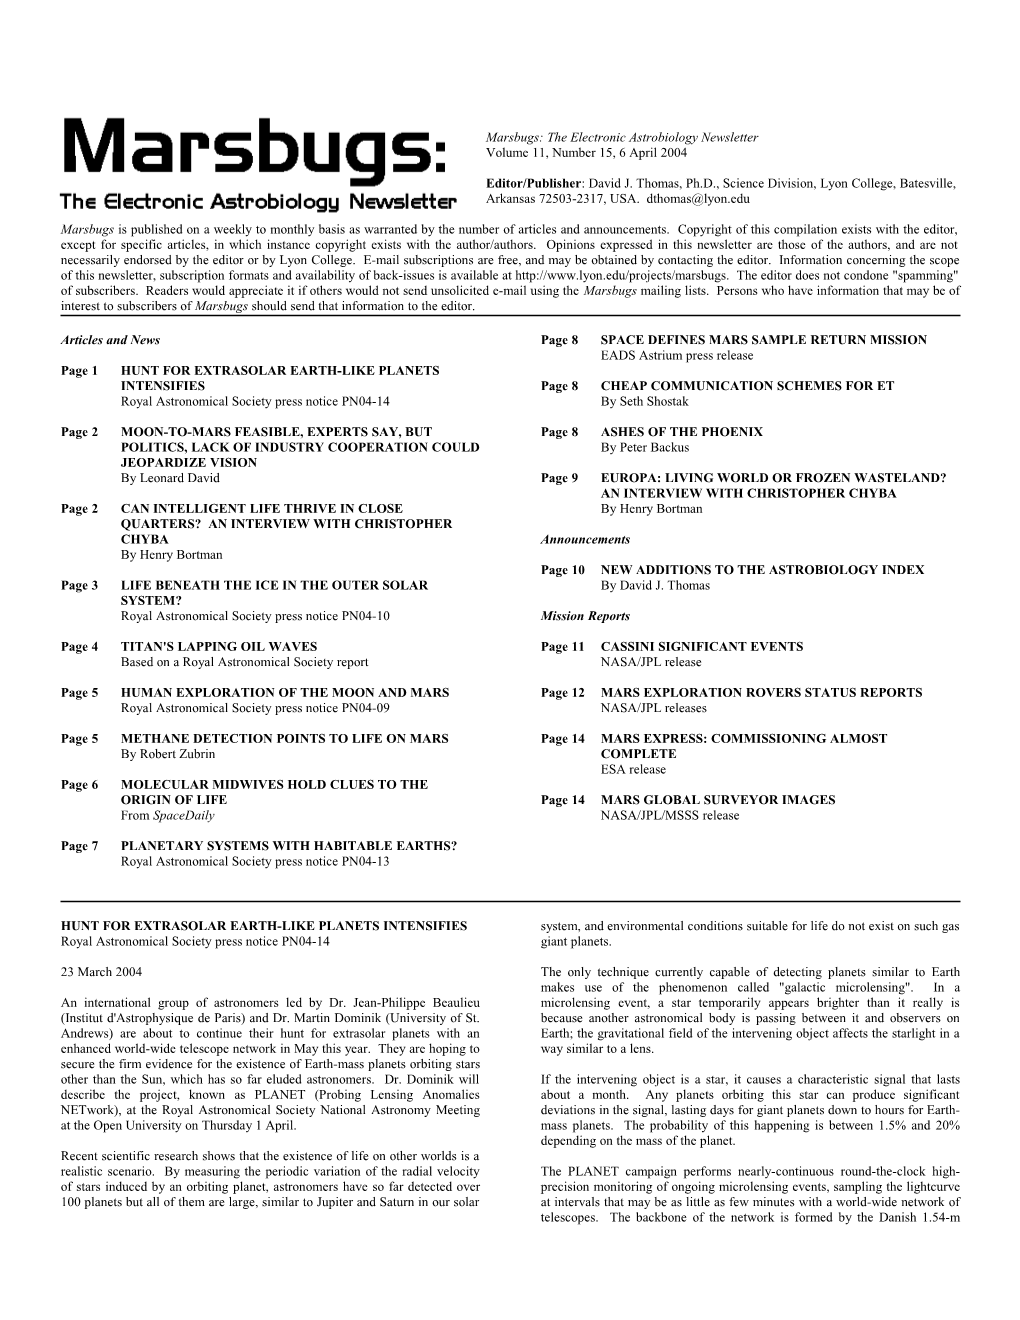 Marsbugs Vol. 11, No. 15